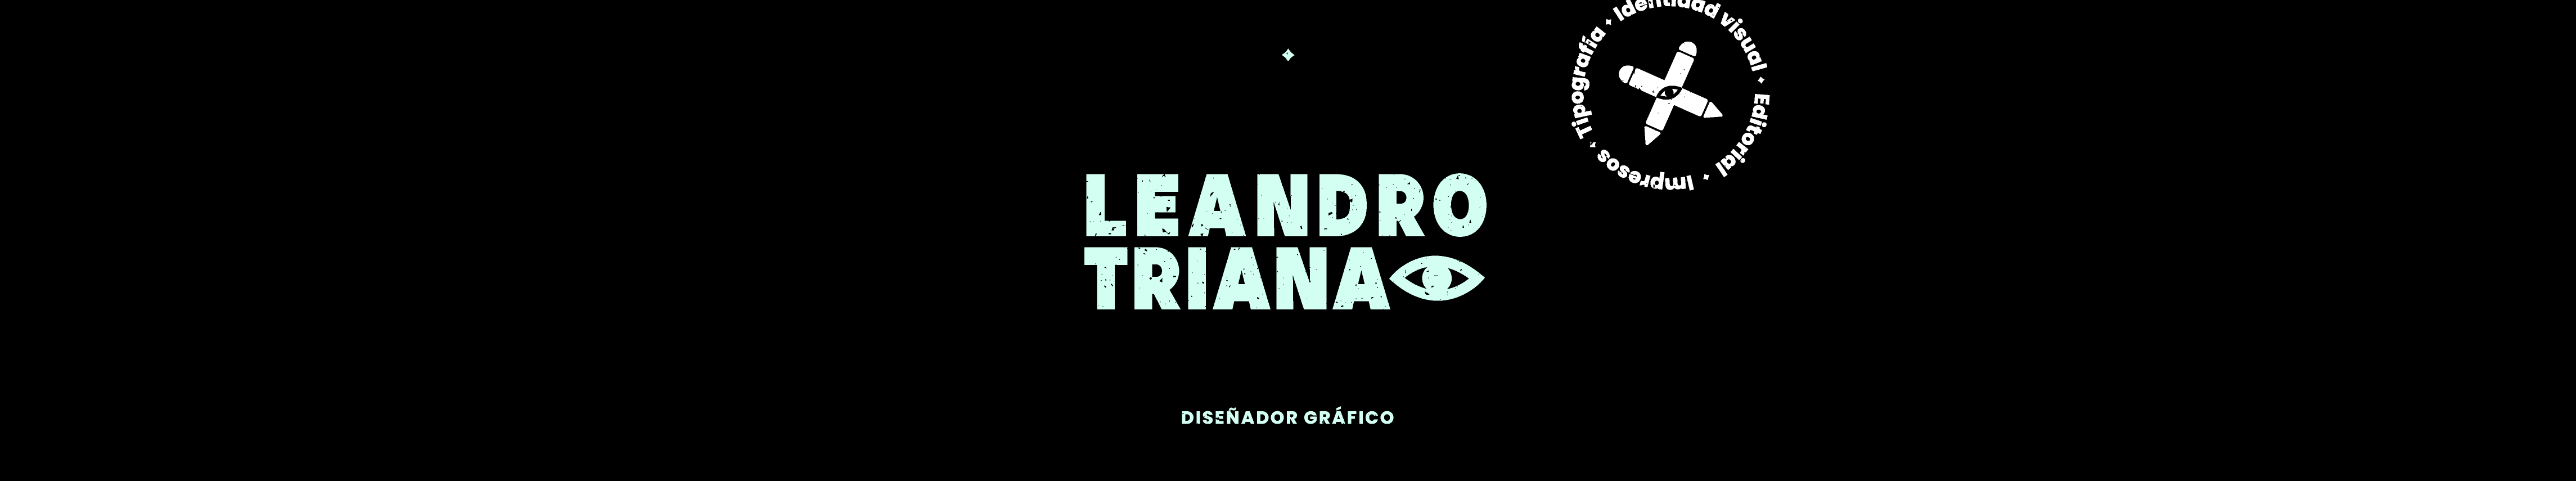 Leandro Triana Trujillo's profile banner